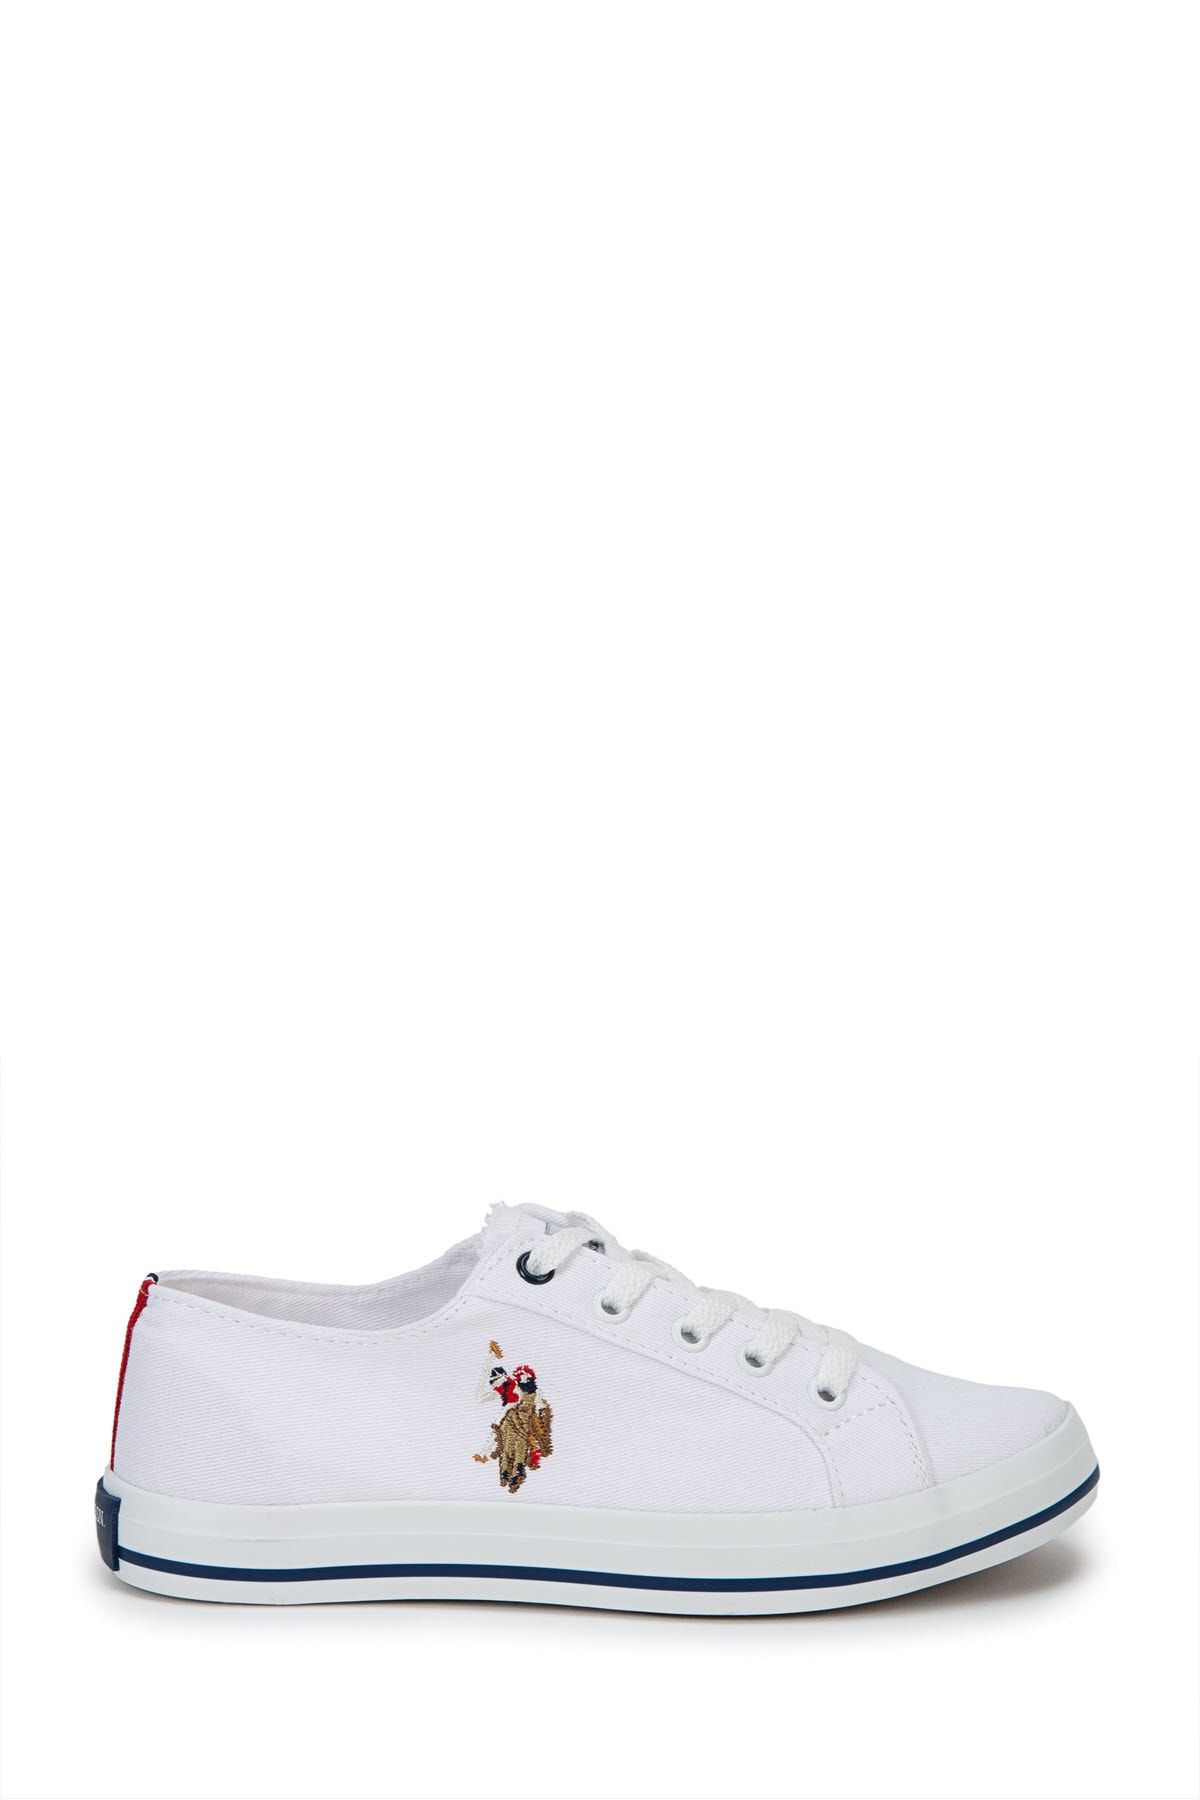 U.S. Polo Assn. Beyaz Kadın Sneaker